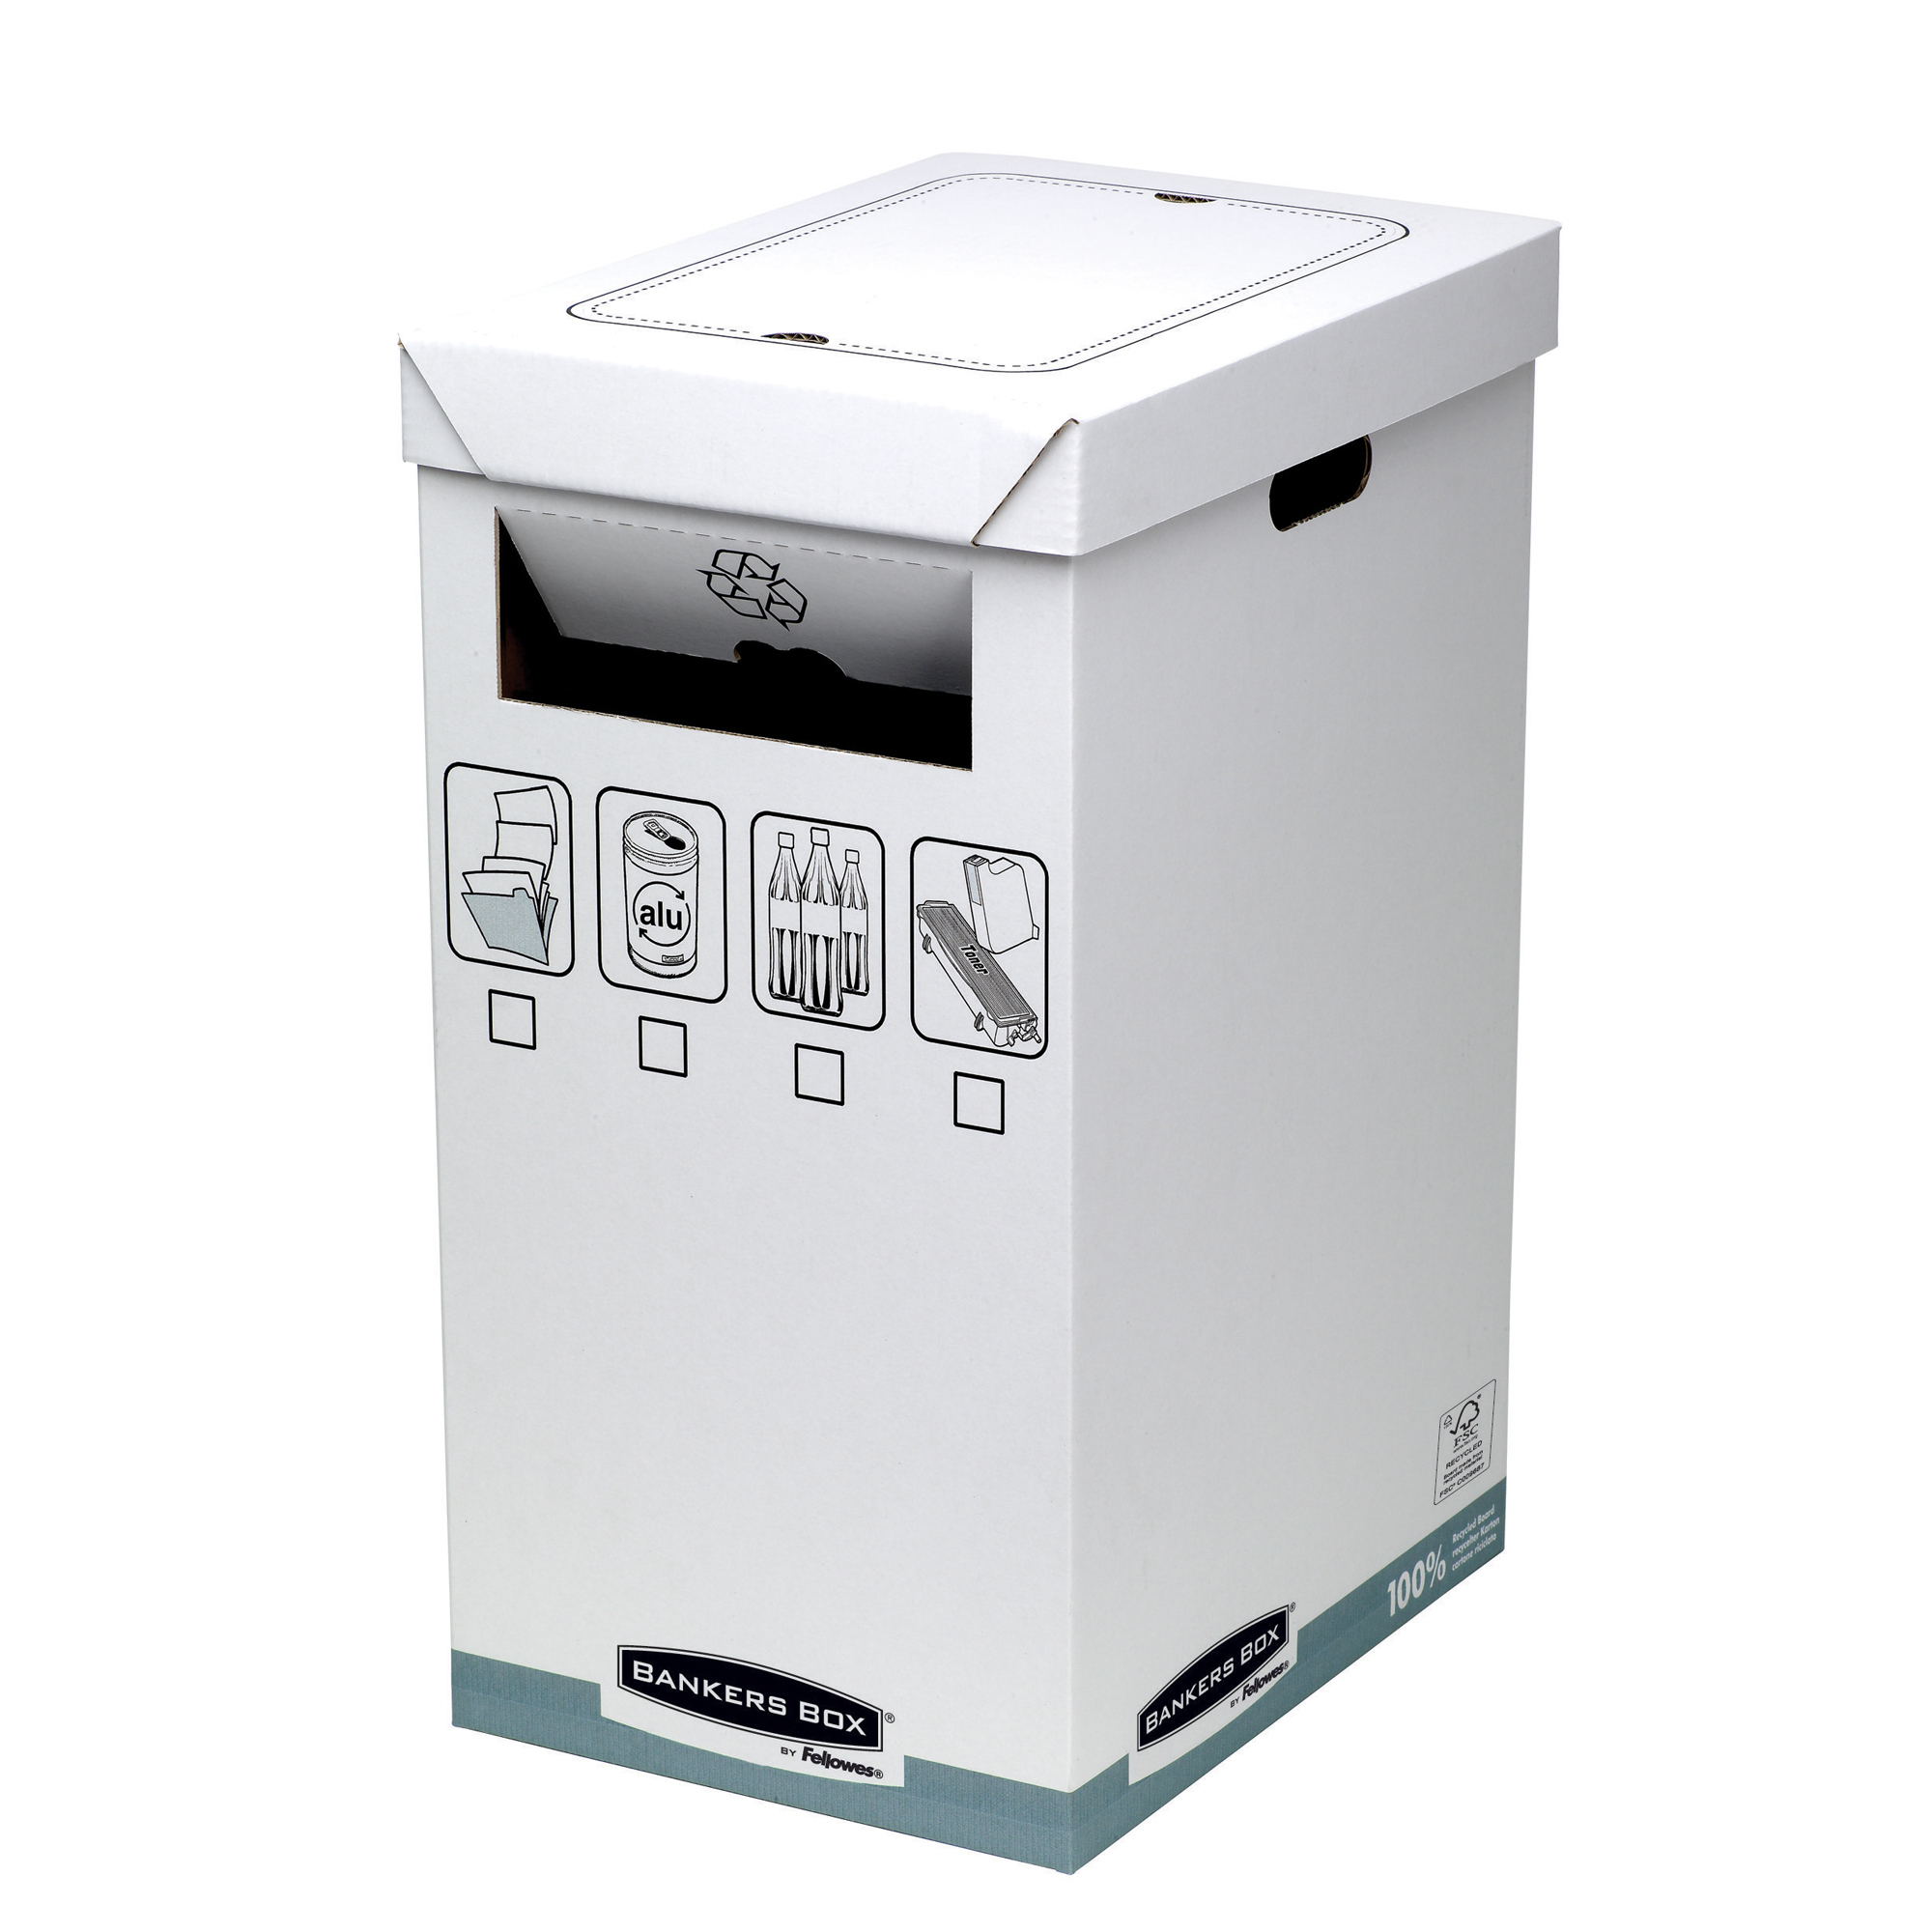 Cestino per riciclo Bankers Box System - capacitA' 90 litri - 30x50 cm - dorso 60 cm -  Fellowes